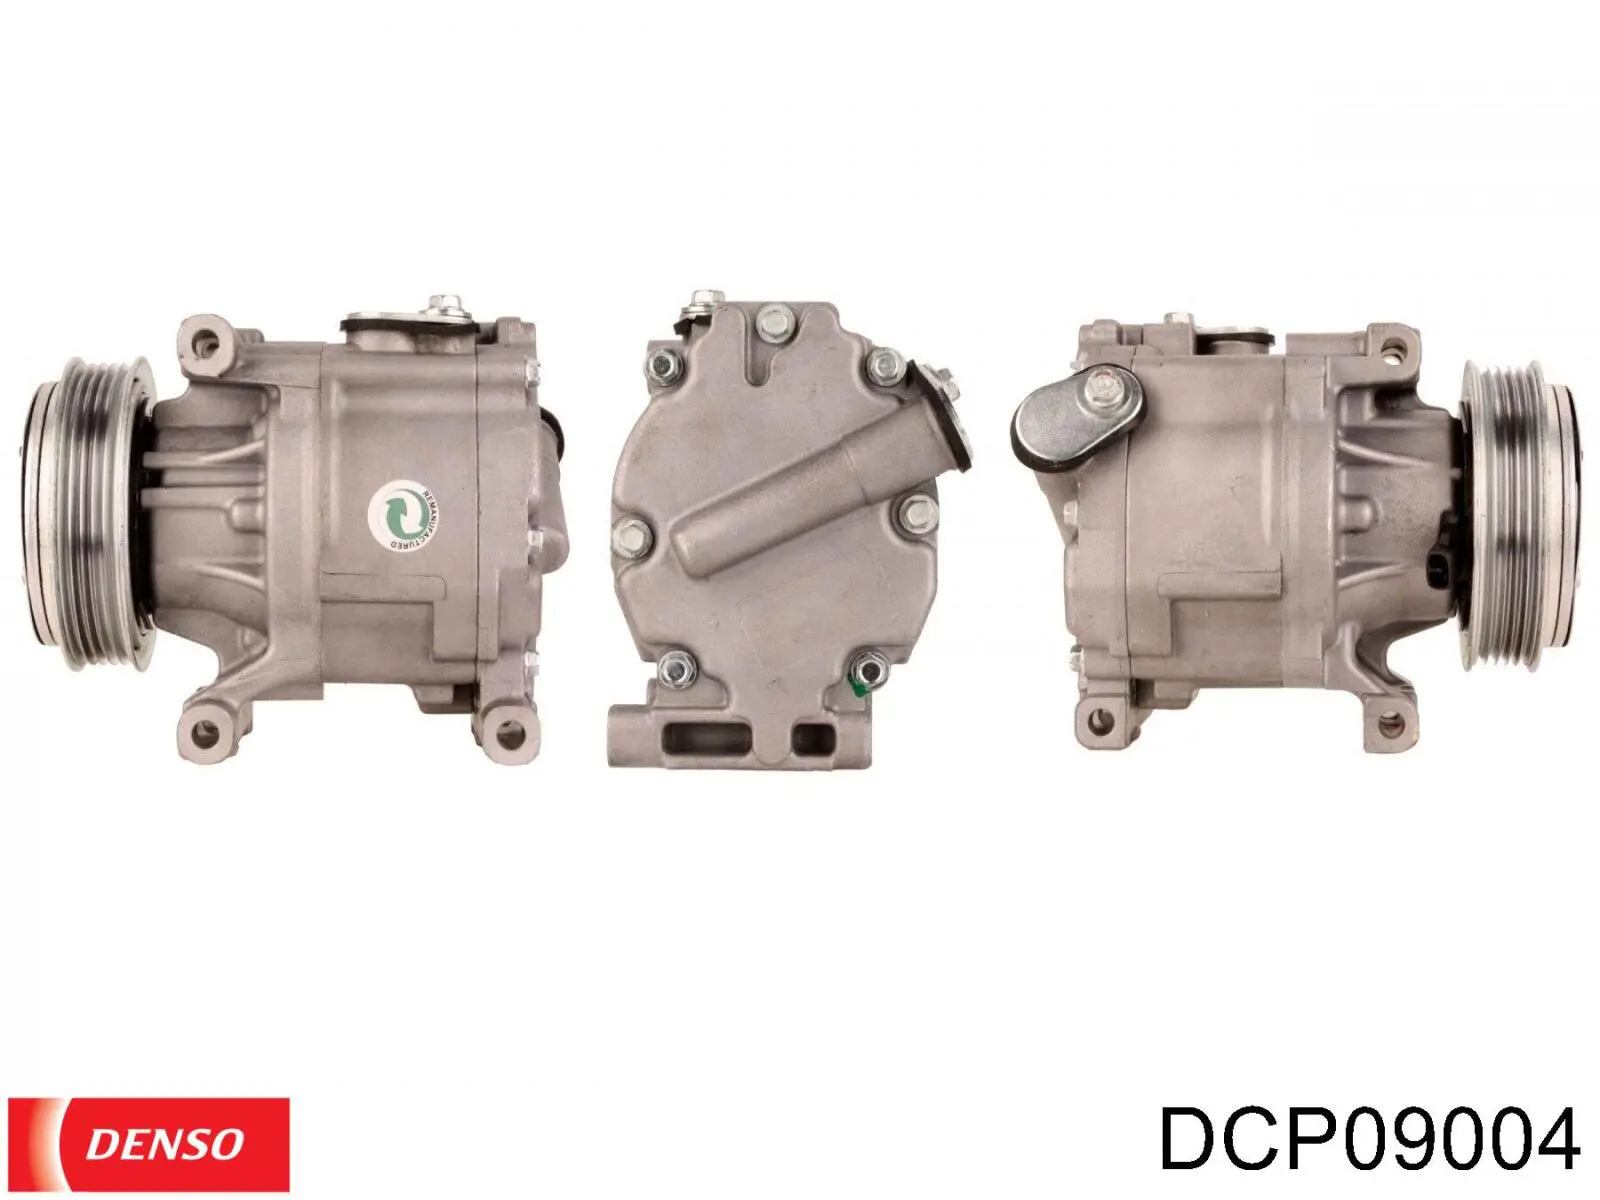 DCP09004 Denso compresor de aire acondicionado